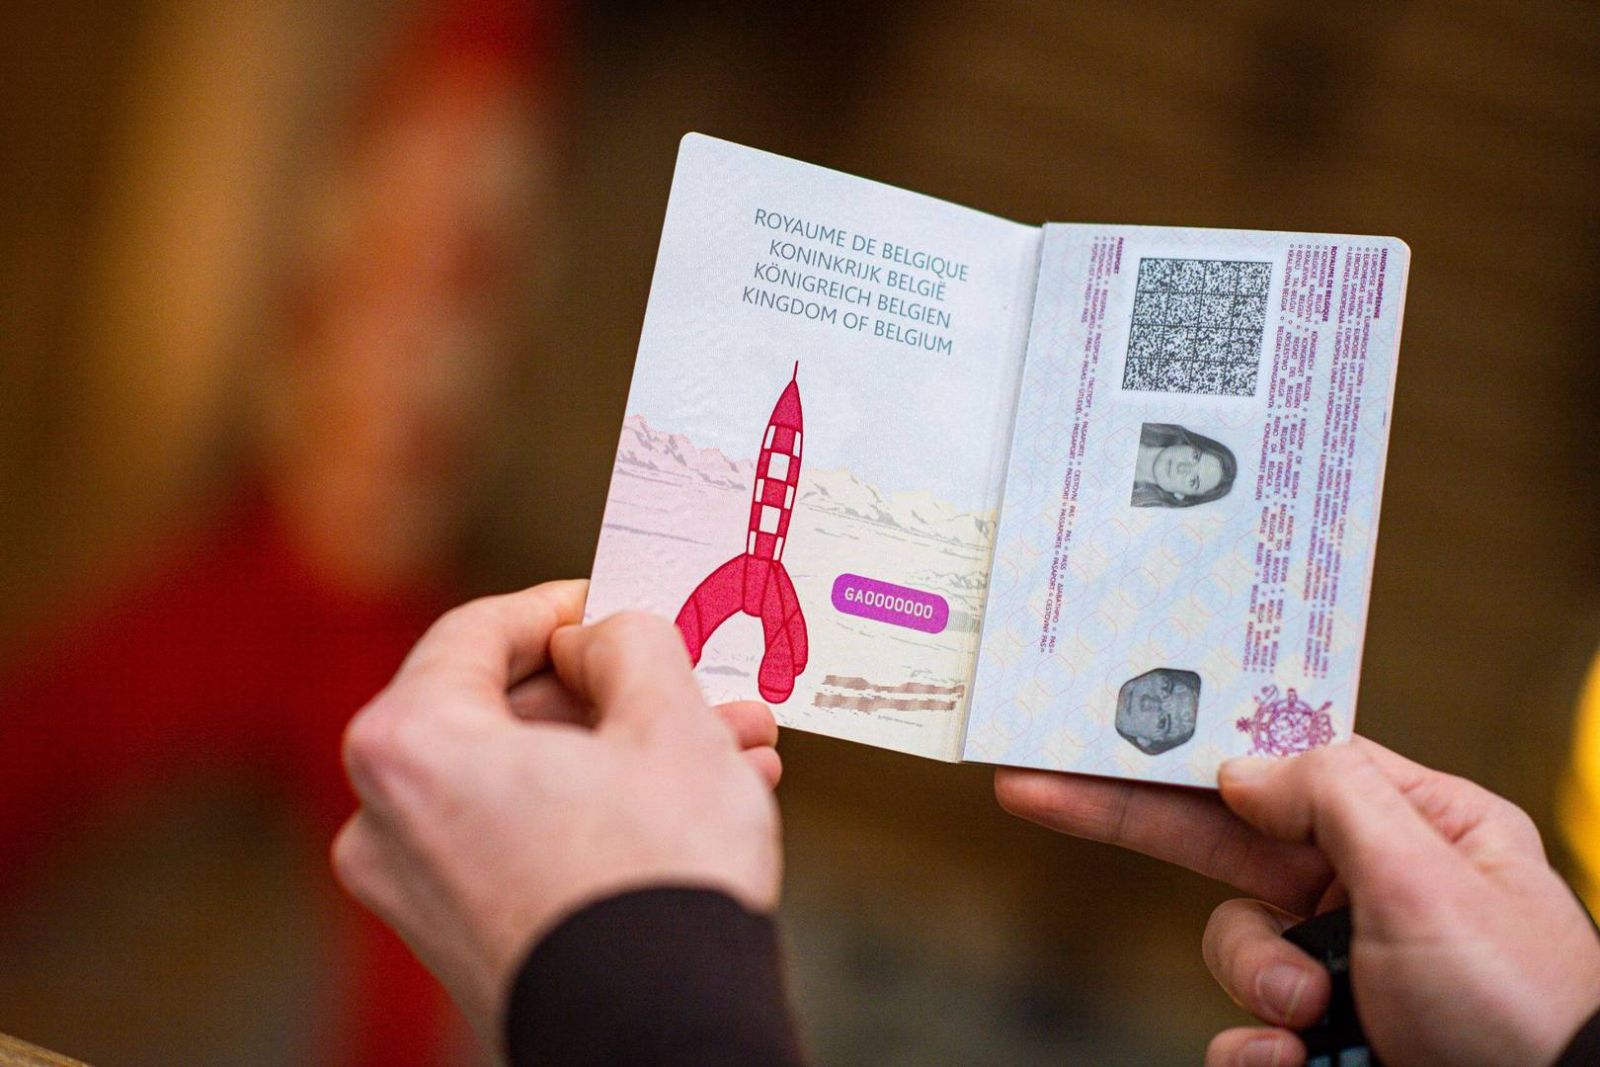 Бельгийские паспорта с рисунками из комиксов. Фото: BELGA